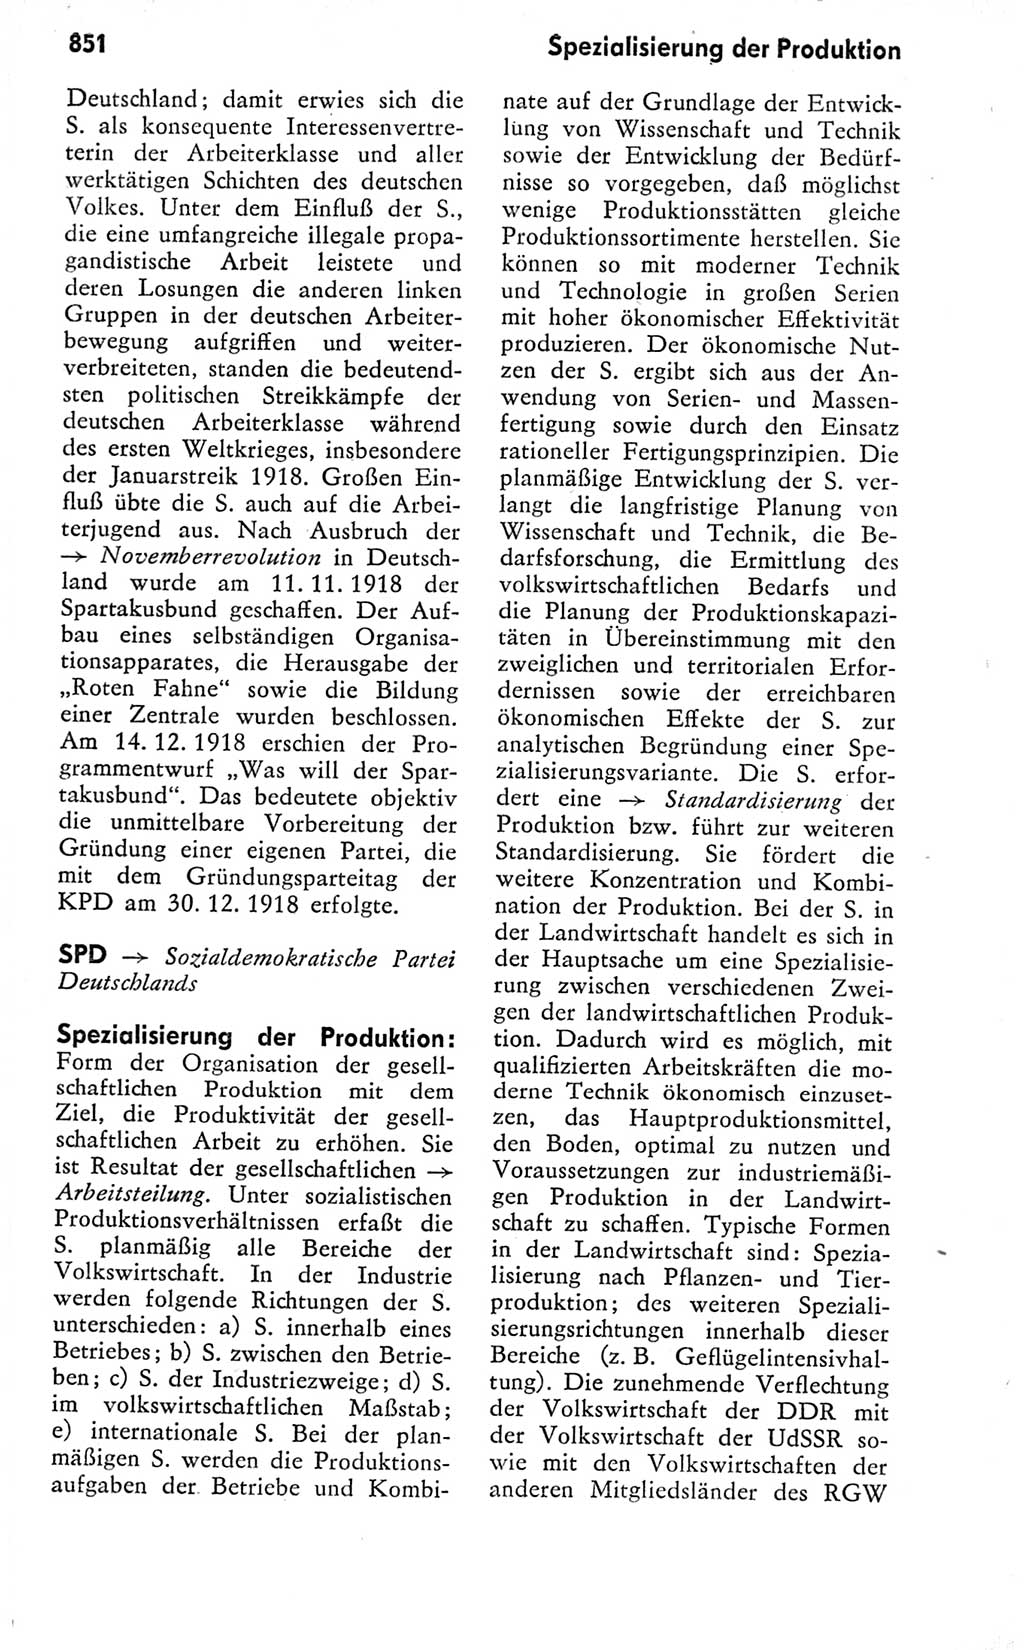 Kleines politisches Wörterbuch [Deutsche Demokratische Republik (DDR)] 1978, Seite 851 (Kl. pol. Wb. DDR 1978, S. 851)